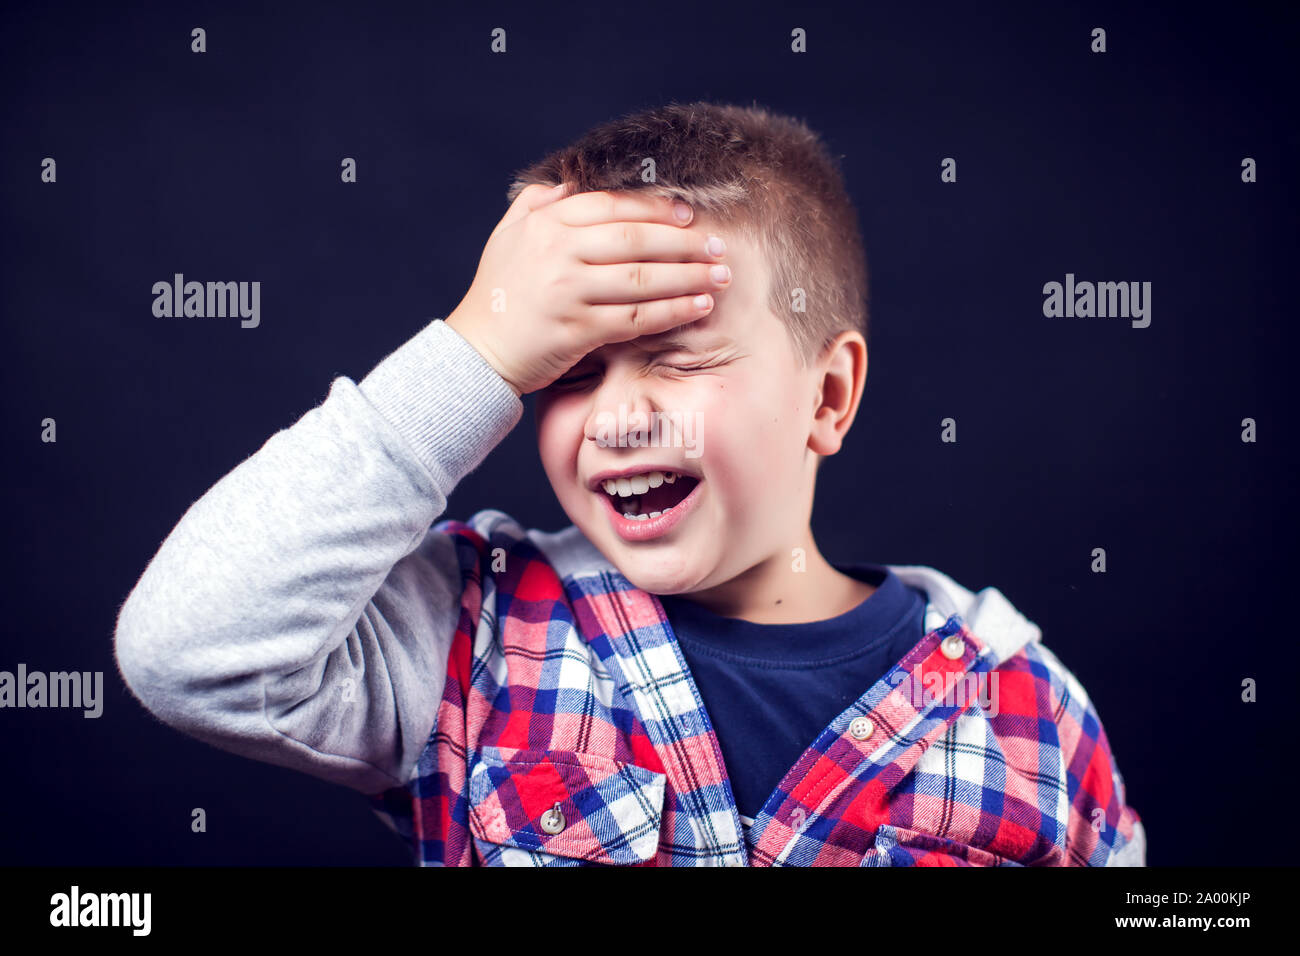 Ein Junge fühlt sich starke Kopfschmerzen. Kinder, Gesundheitswesen und Medizin Konzept Stockfoto